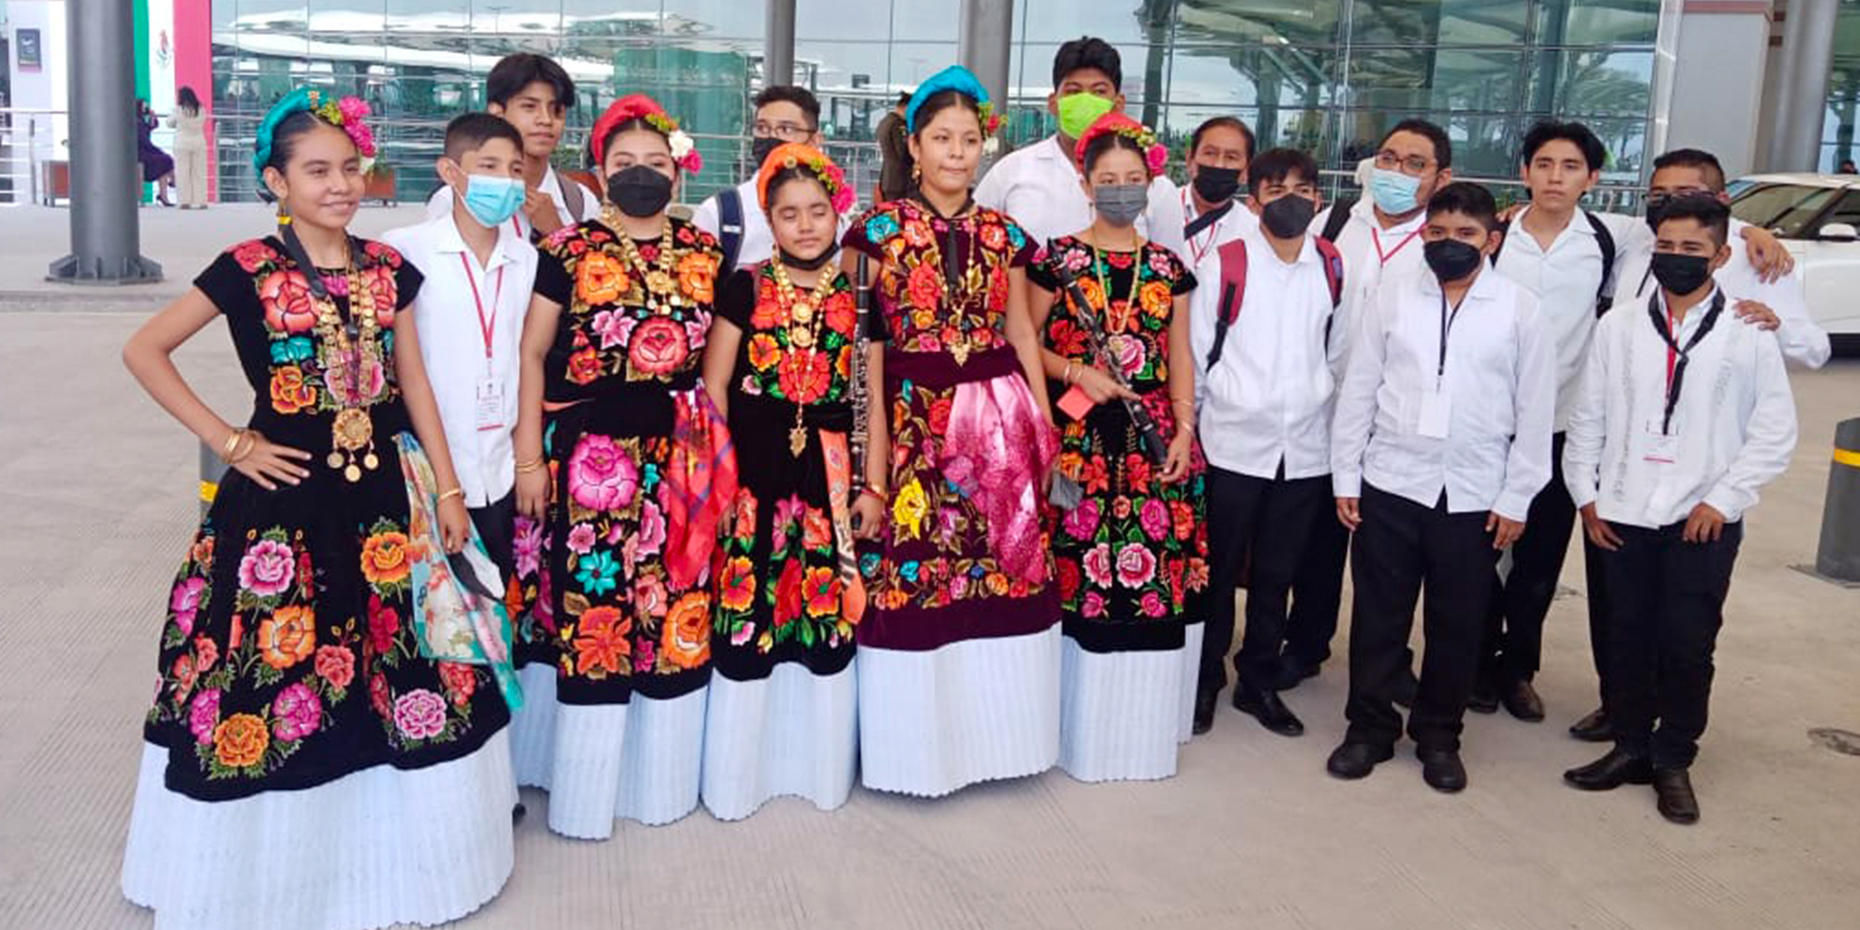 Banda Sandunga actúa en la inauguración del AIFA | El Imparcial de Oaxaca